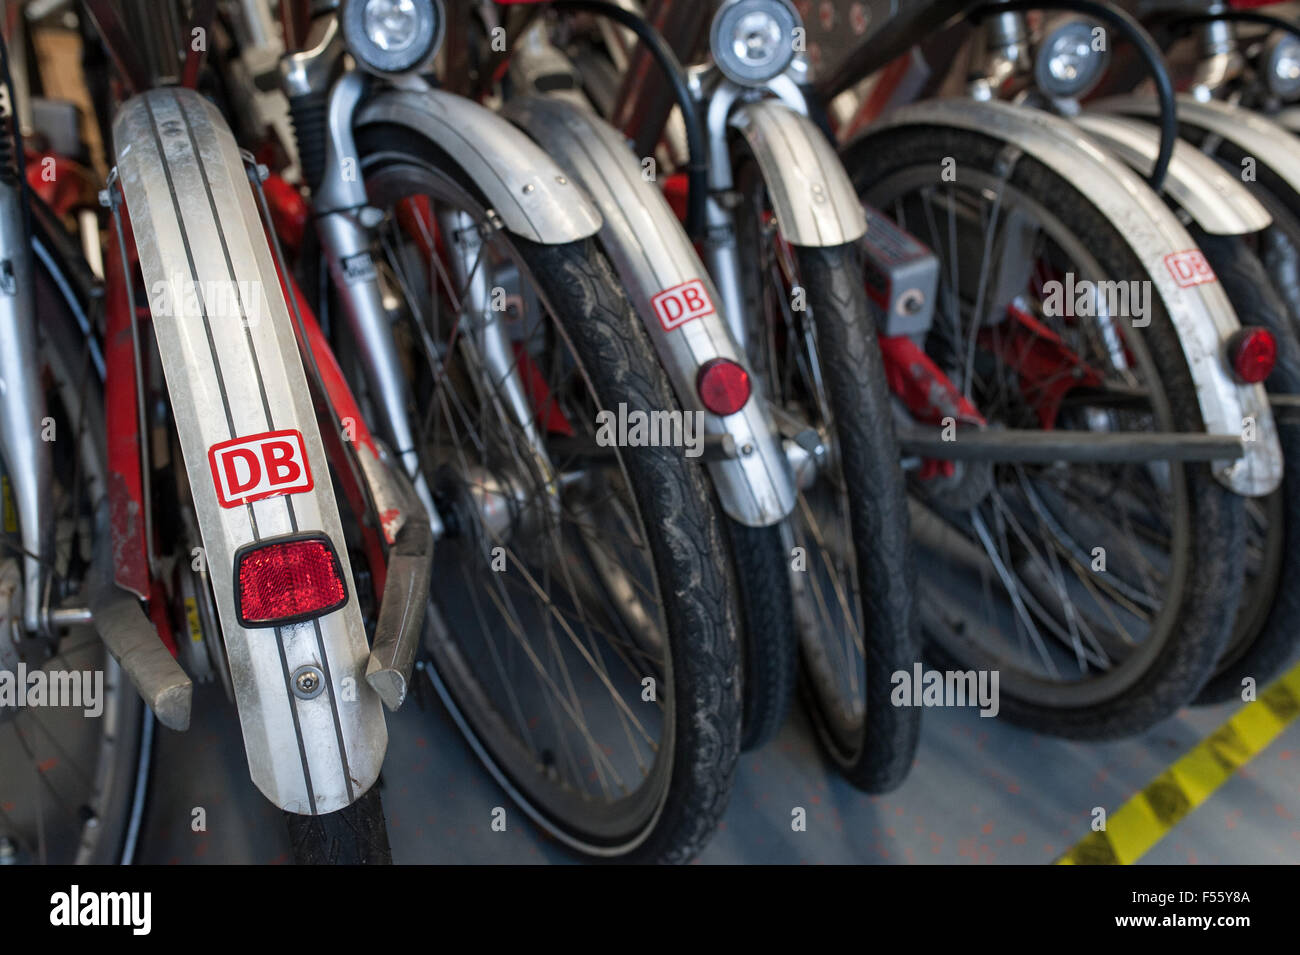 28.01.2015, Berlin, Berlin, Germania - German Rail fornisce uno sguardo dietro le quinte di chiamare una bici, la city bike per Berlino. Dal 2002, la città delle biciclette per le strade di Berlino sono in viaggio. 00Y150128D050CAROEX.JPG - non per la vendita in G E R M A N Y, A U S T R I A, S W I T Z e R L A N D [modello di rilascio: non applicabile, la proprietà di rilascio: NO (c) caro agenzia fotografica / Teich, http://www.caro-images.pl, info@carofoto.pl - nel caso di utilizzo di foto per non-scopi giornalistici, siete pregati di contattare l'Agenzia - la foto è soggetto a royalty!] Foto Stock